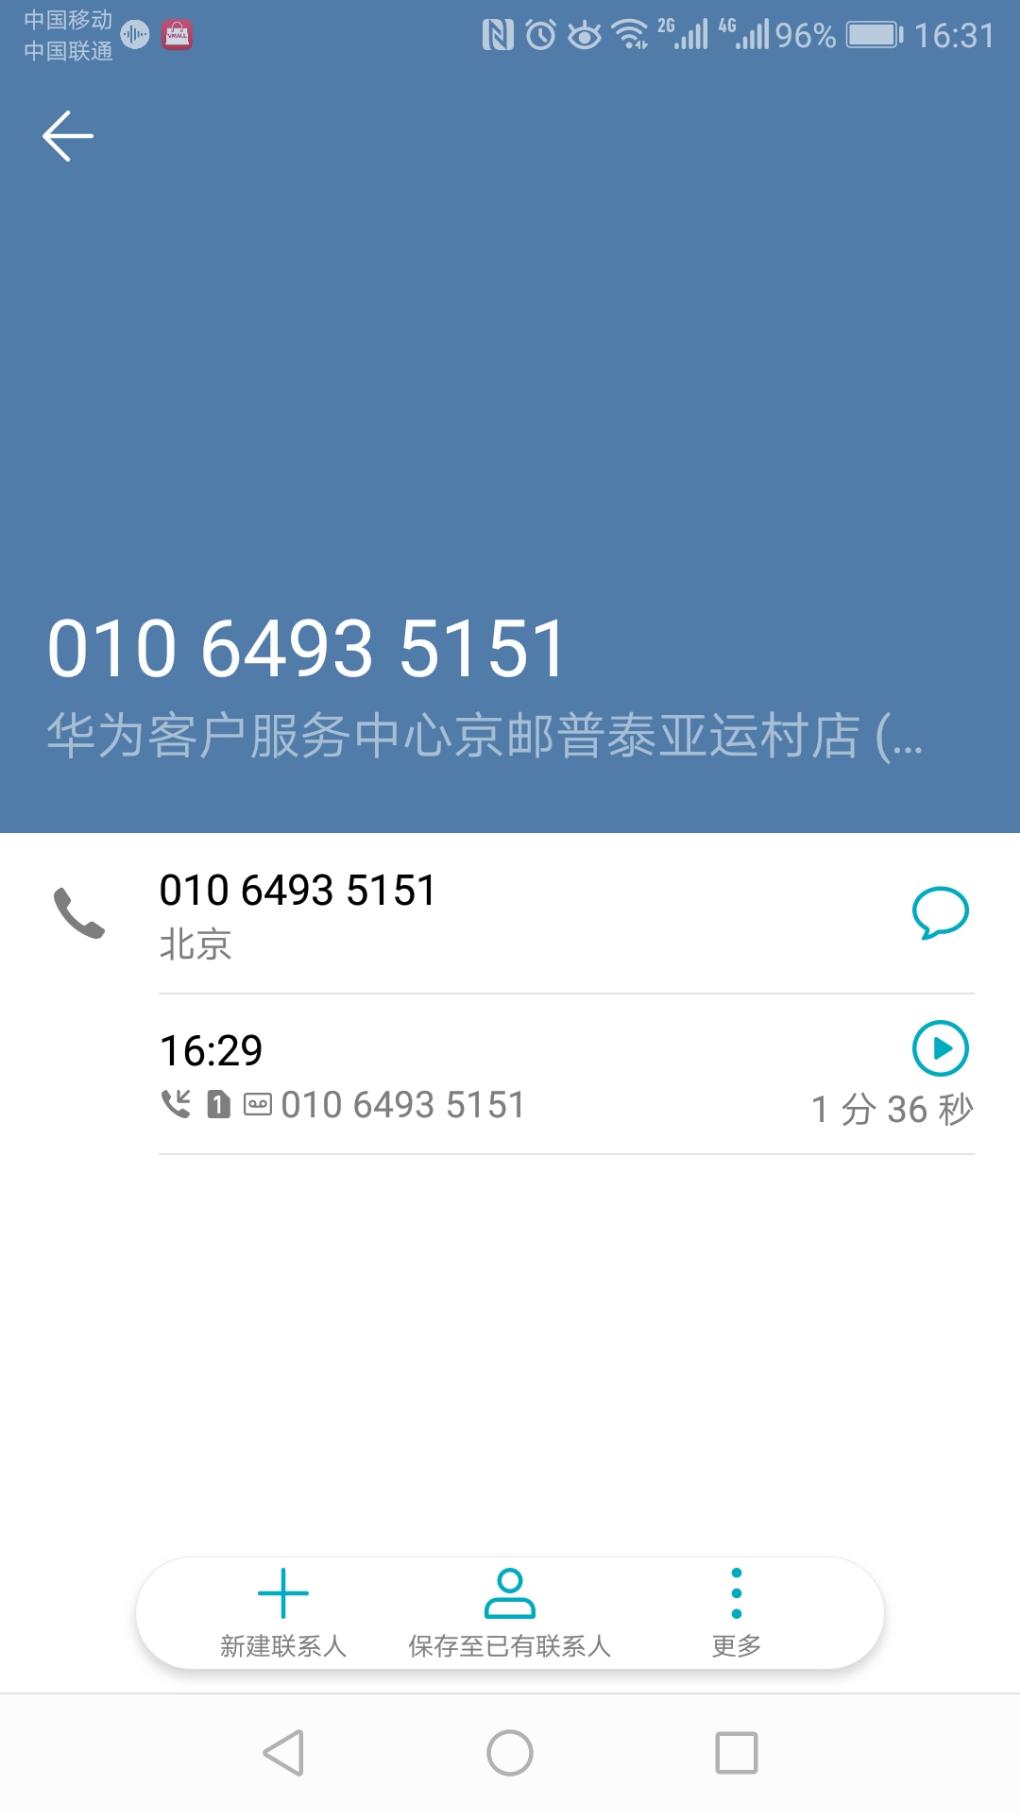 俊俊寄到北京的手机到了-刚客服给我打了电话。-惠小助(52huixz.com)